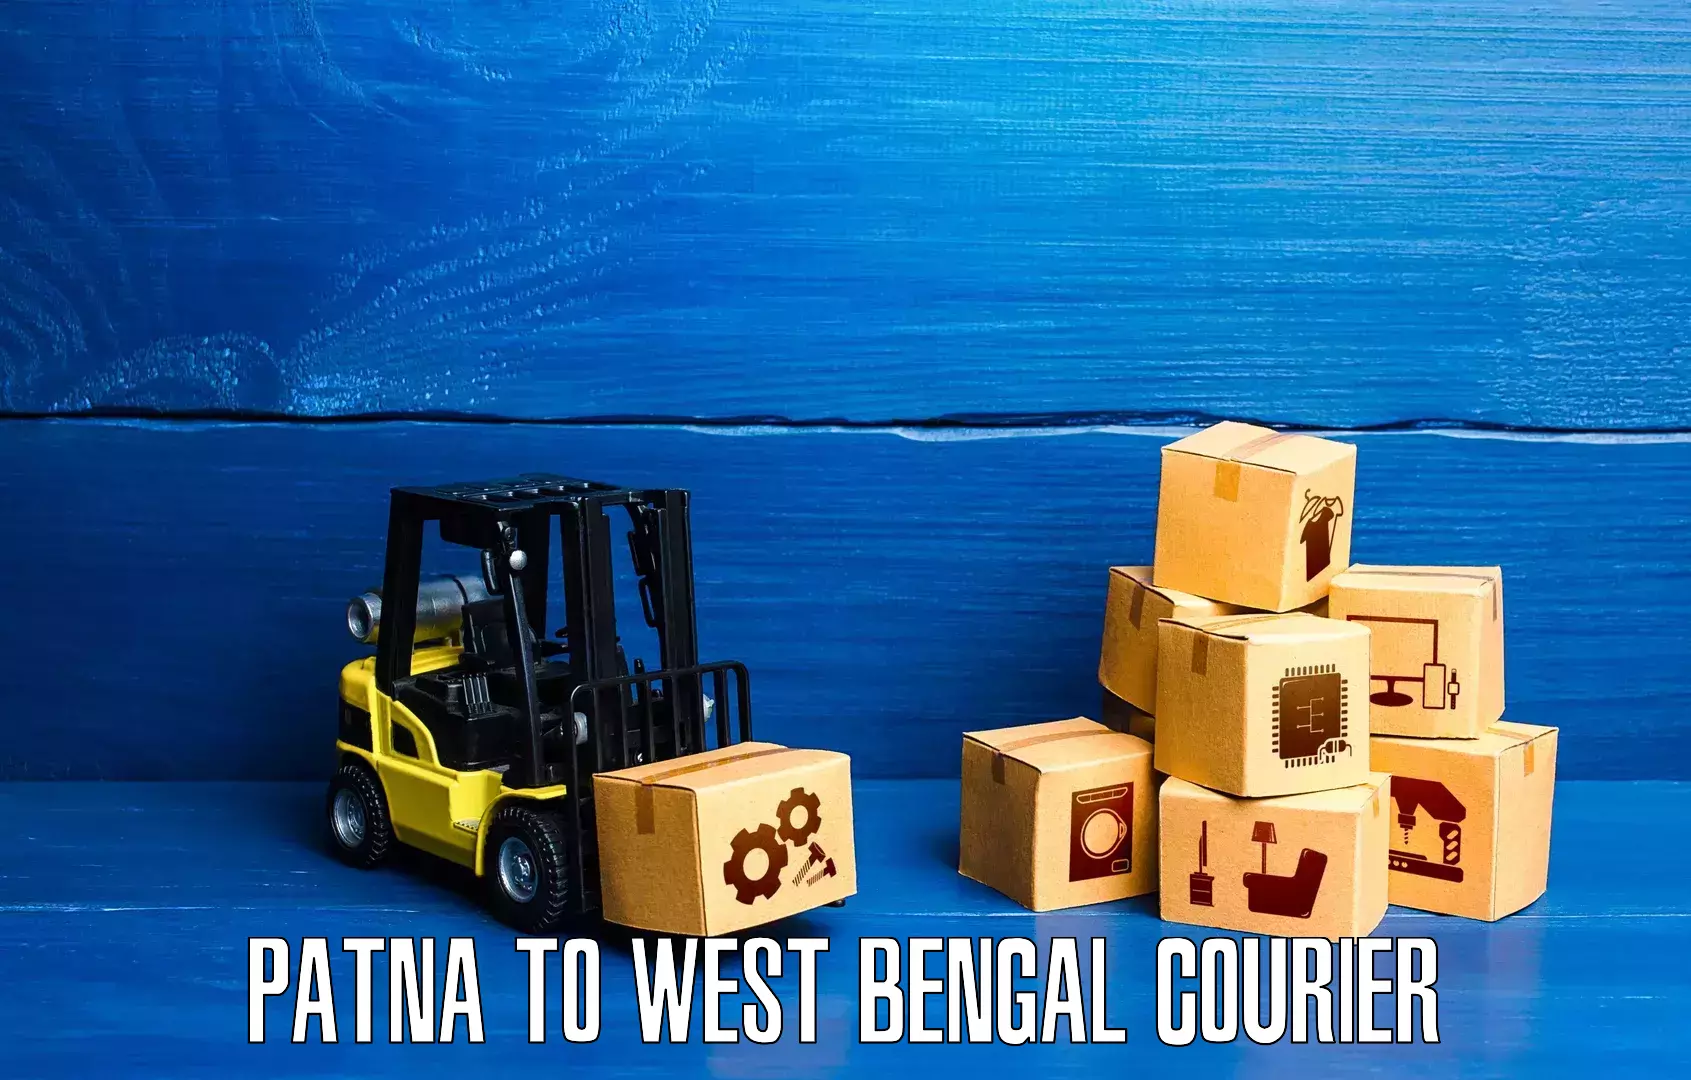 Premium courier services Patna to Kolkata Port